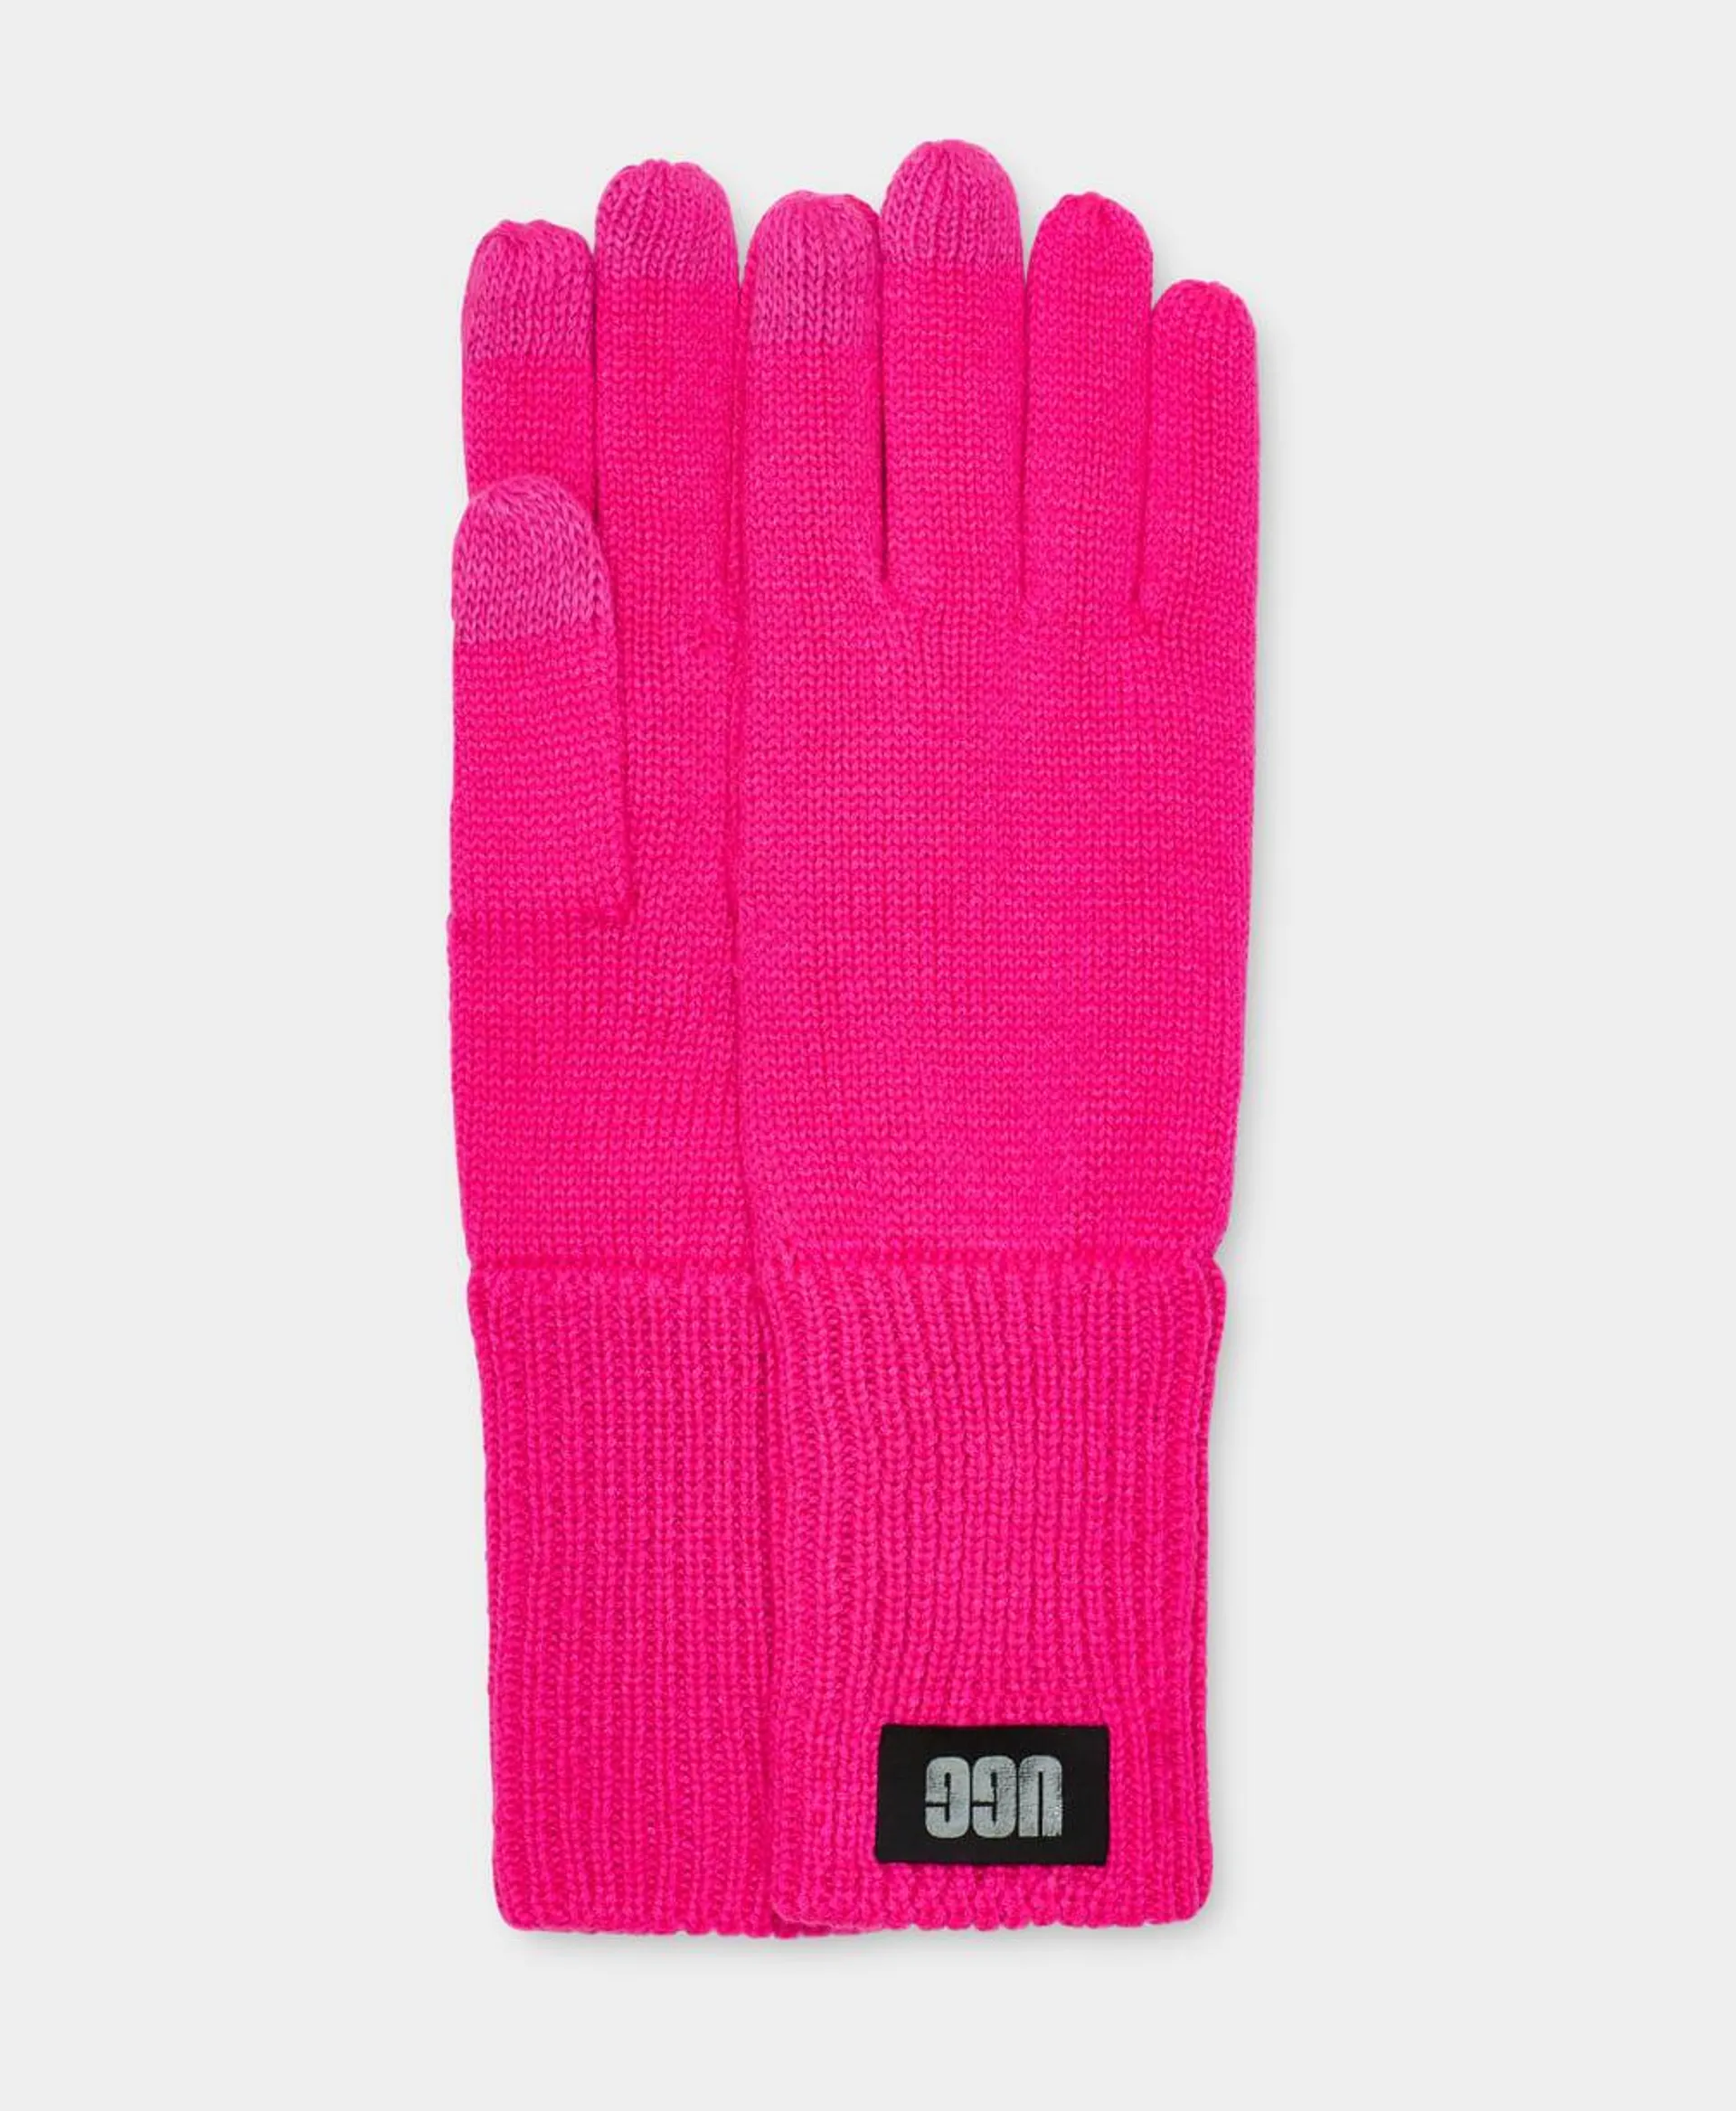 Pop Cuff Knit Glove W Touch